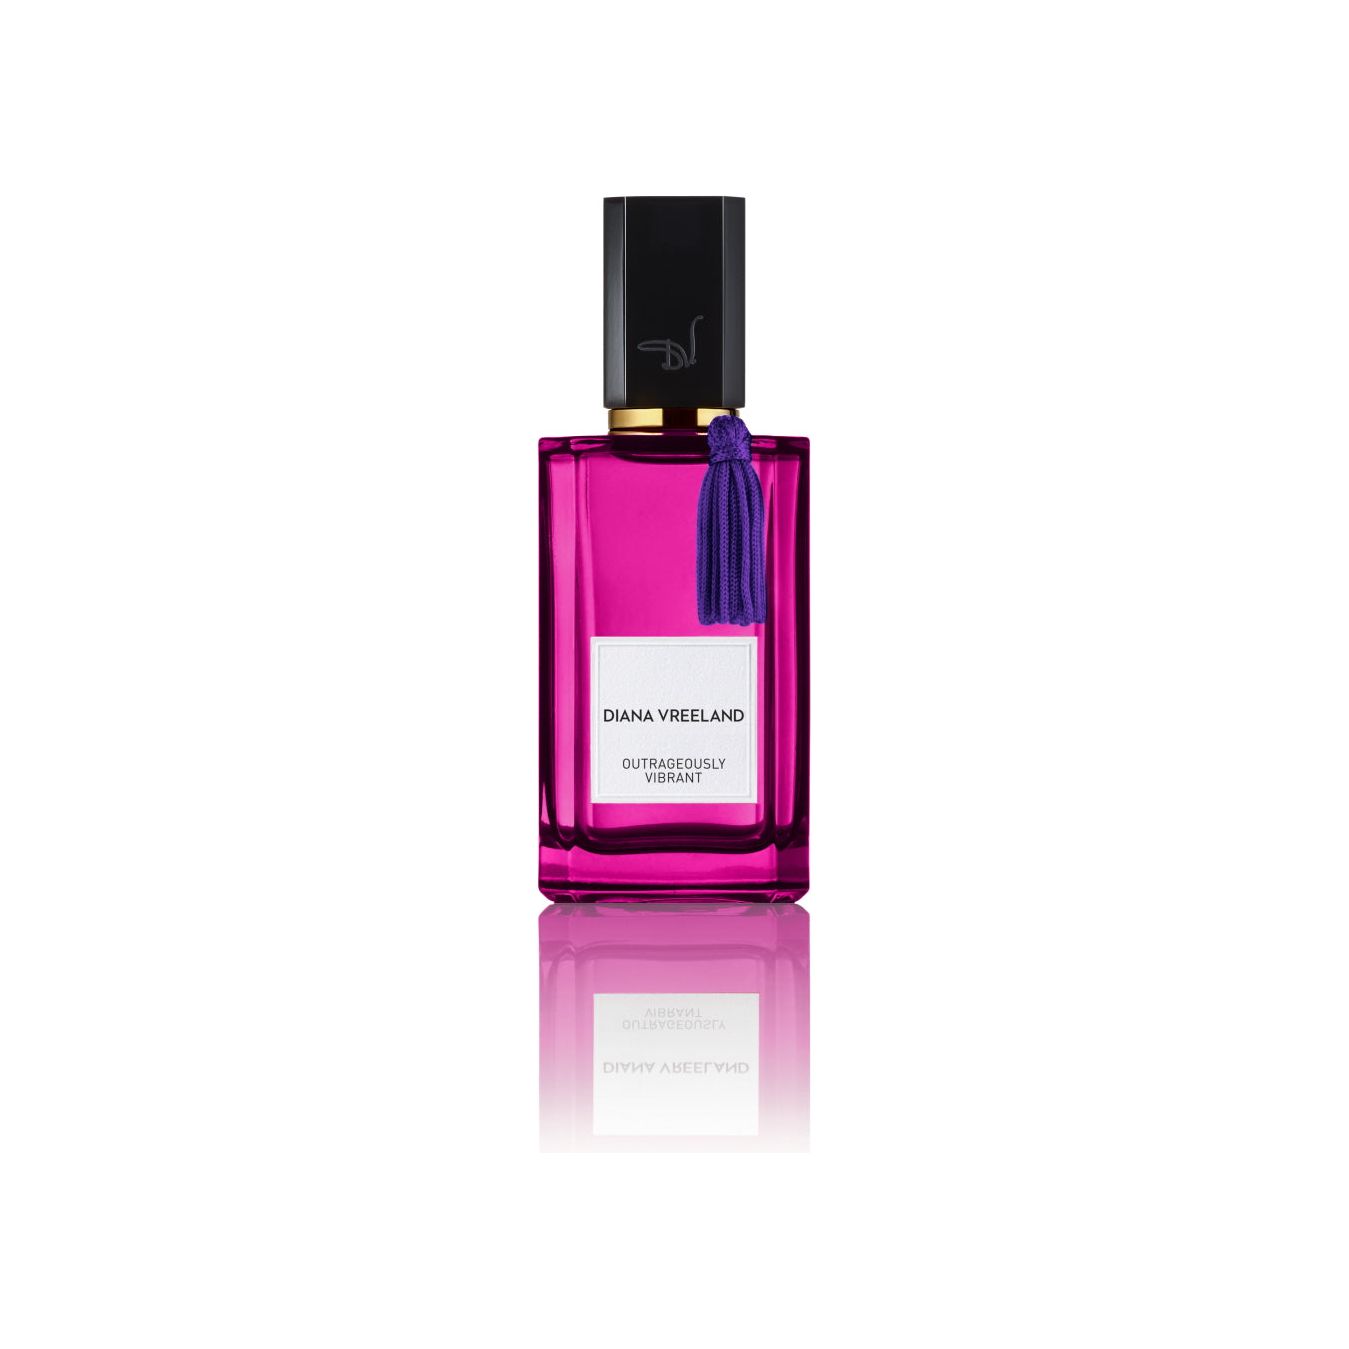 Diana Vreeland - Outrageously Vibrant - Eau de Parfum